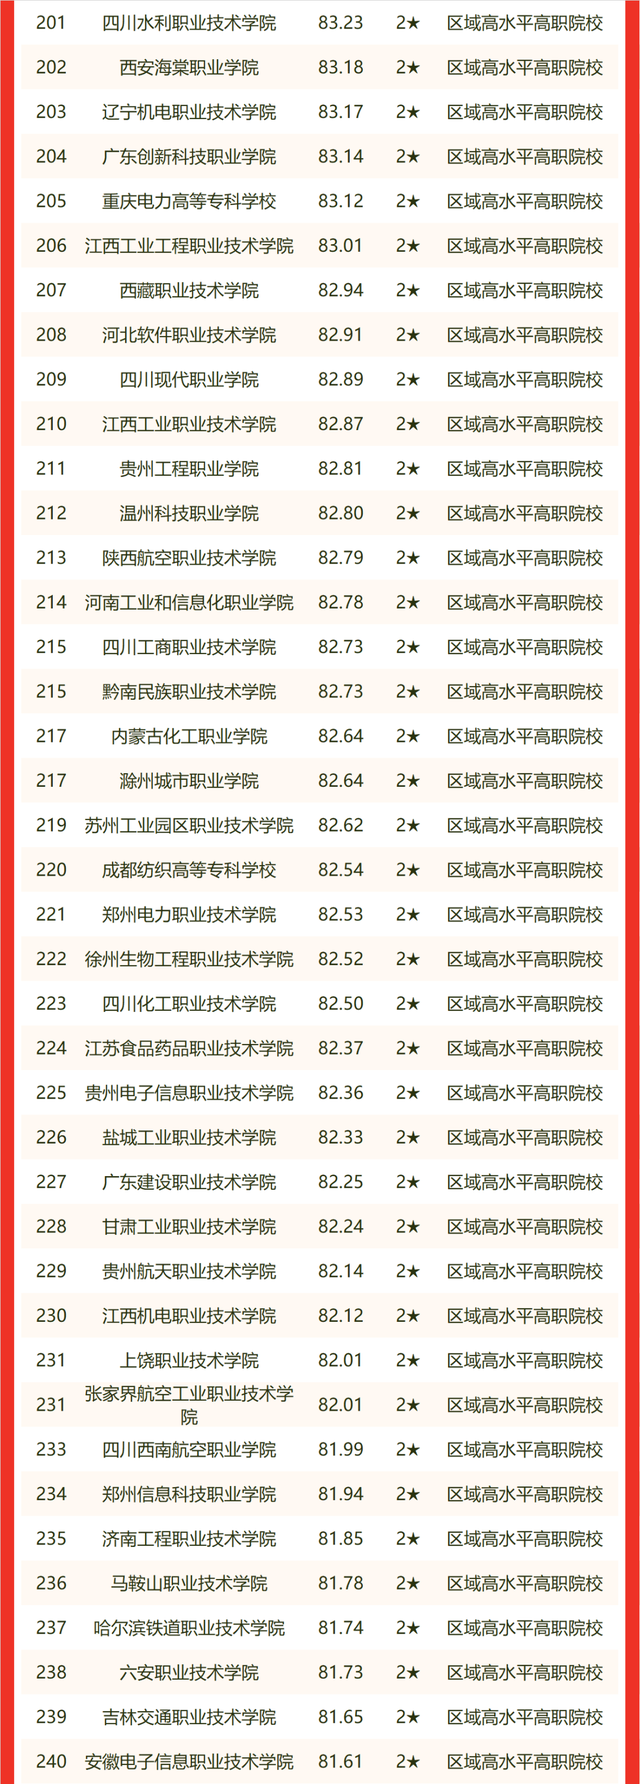 2022校友会中国高职院校排名，黄河水利职业技术学院跃居第一